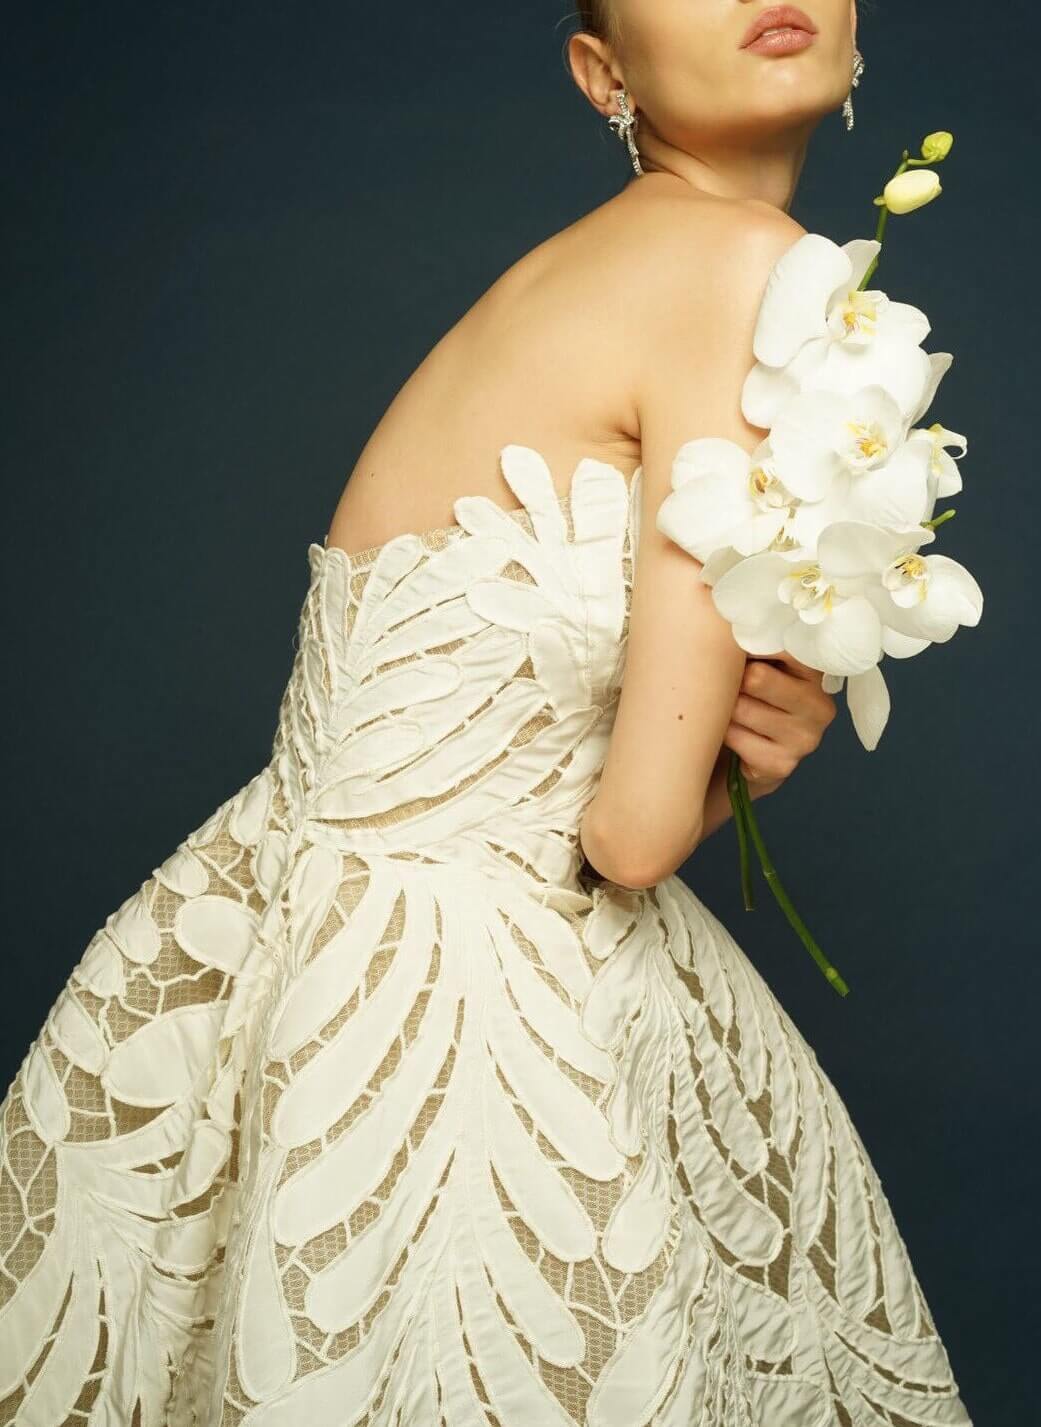 NHKの人気番組、世界はほしいモノにあふれてるで紹介されたオスカーデラレンタのウエディングドレス